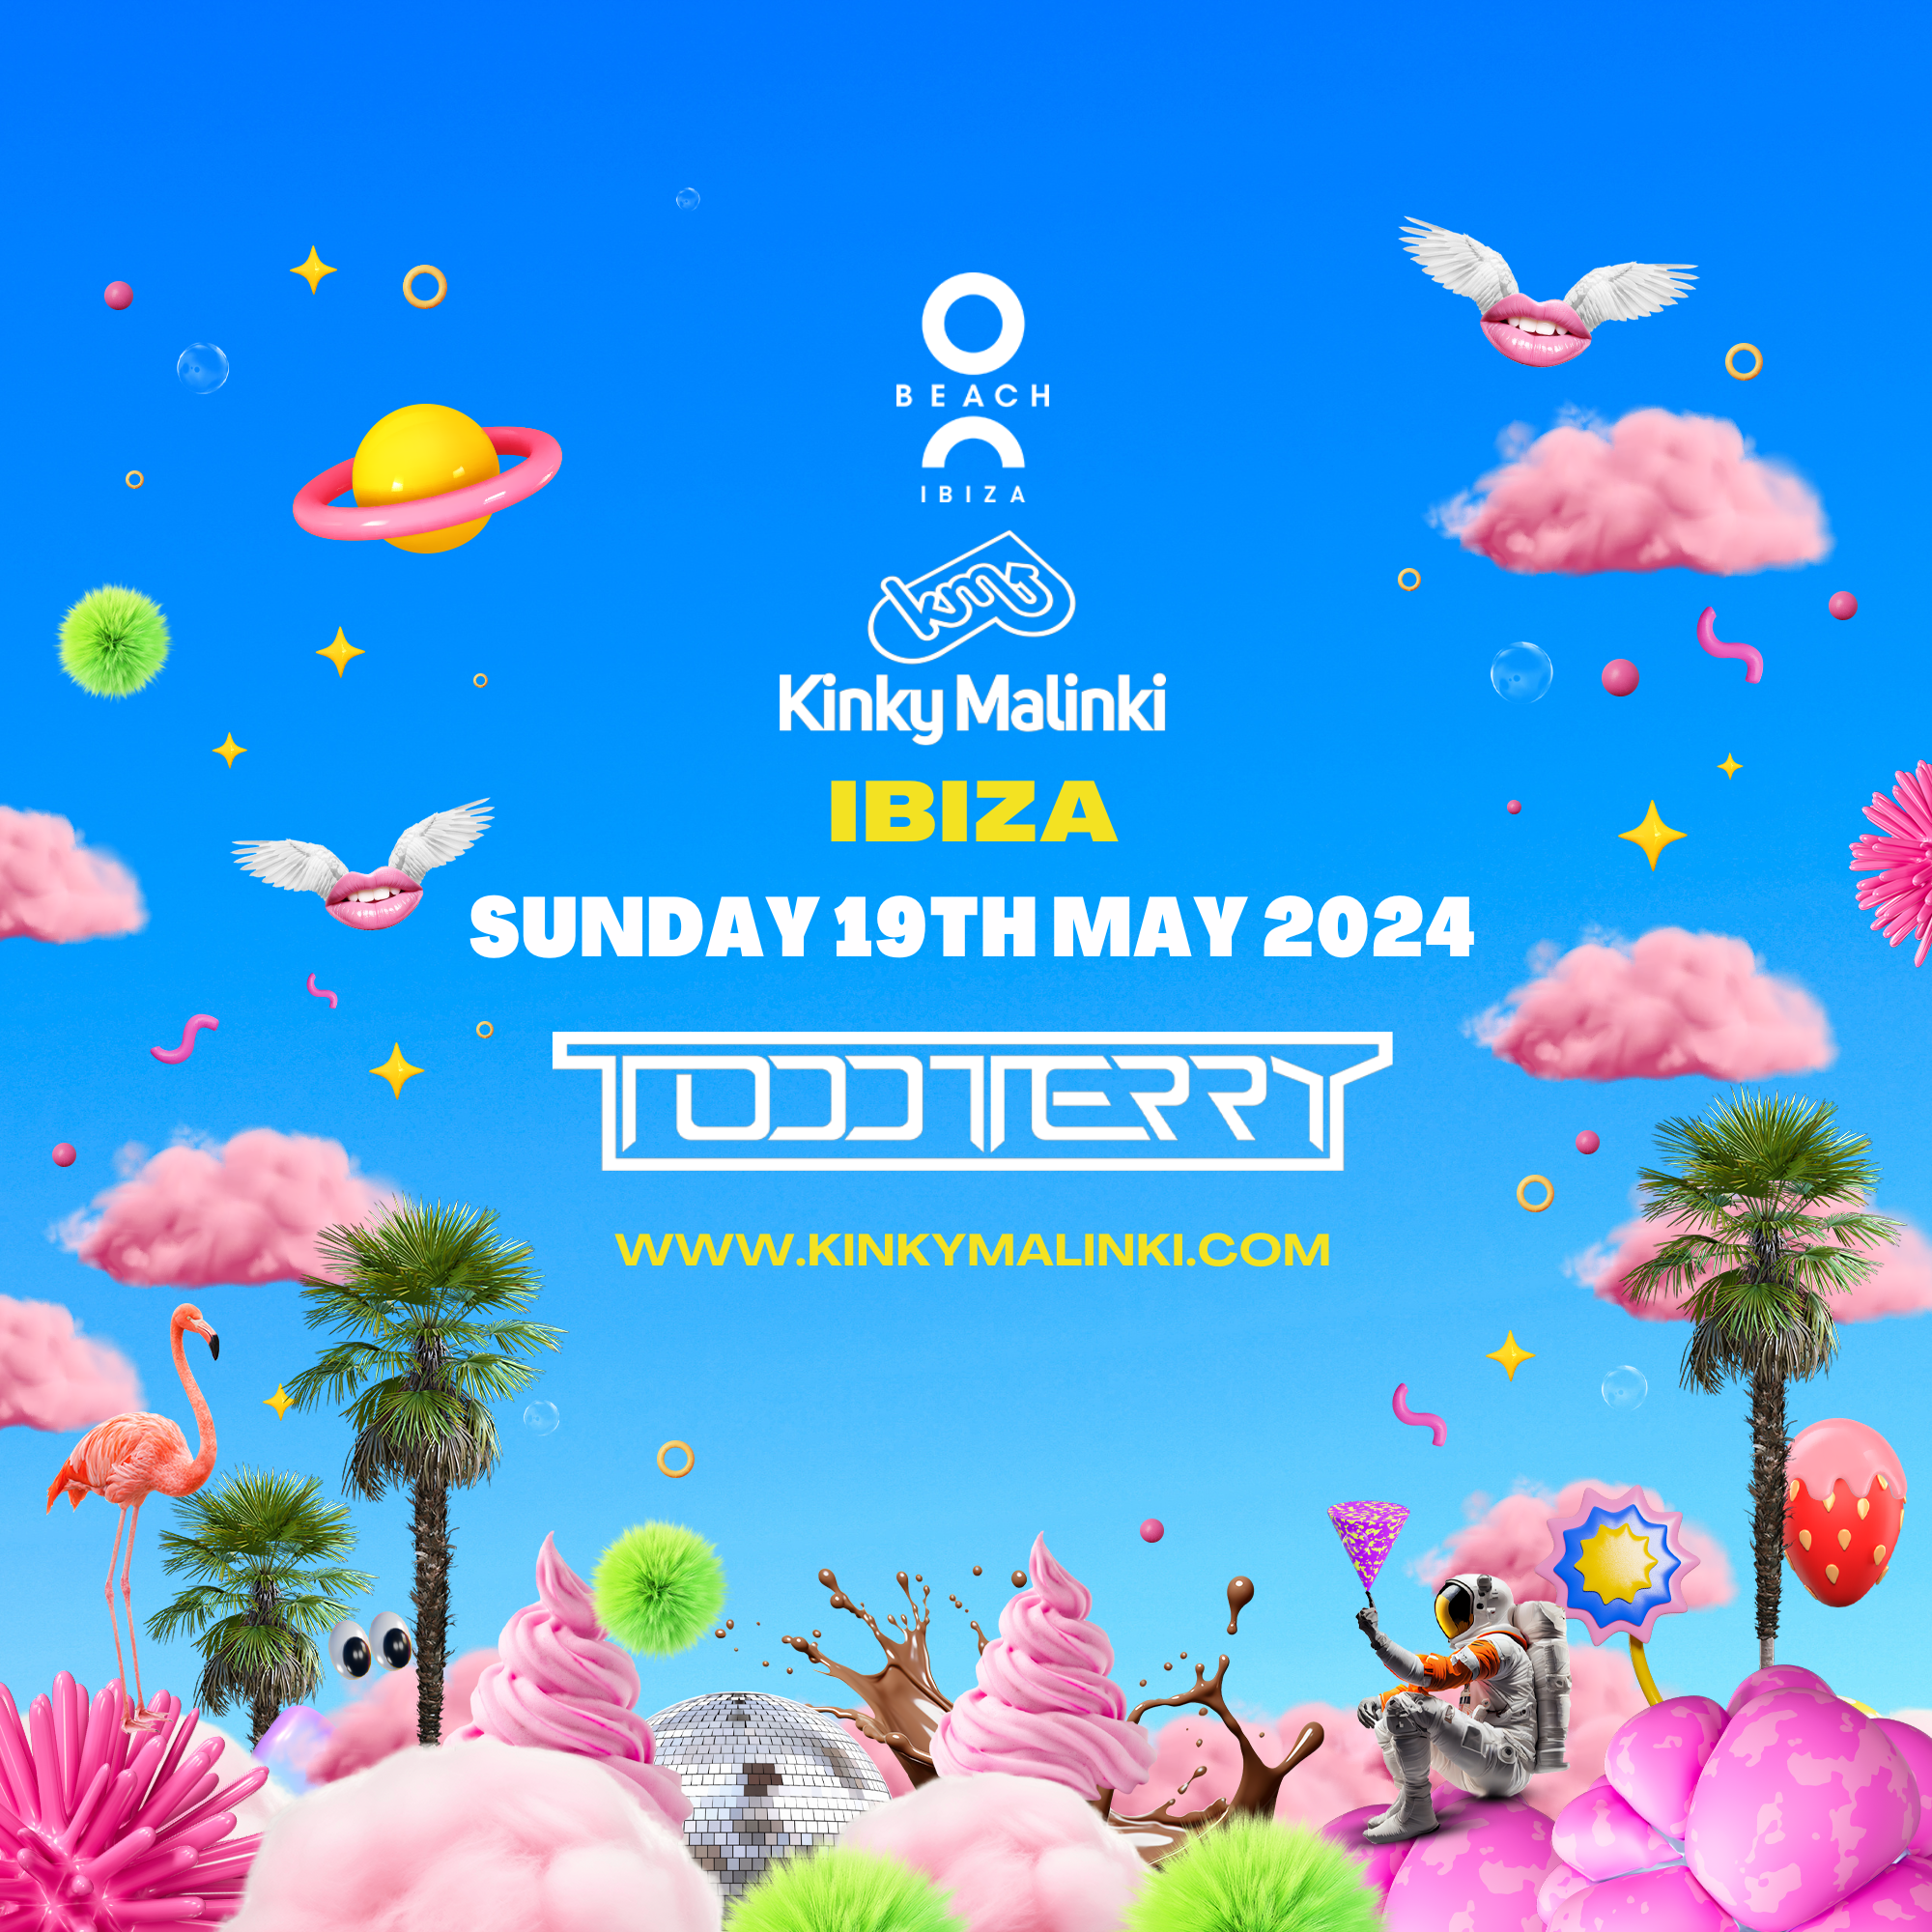 Kinky Malinki Ibiza Opening party with Todd Terry - Página frontal